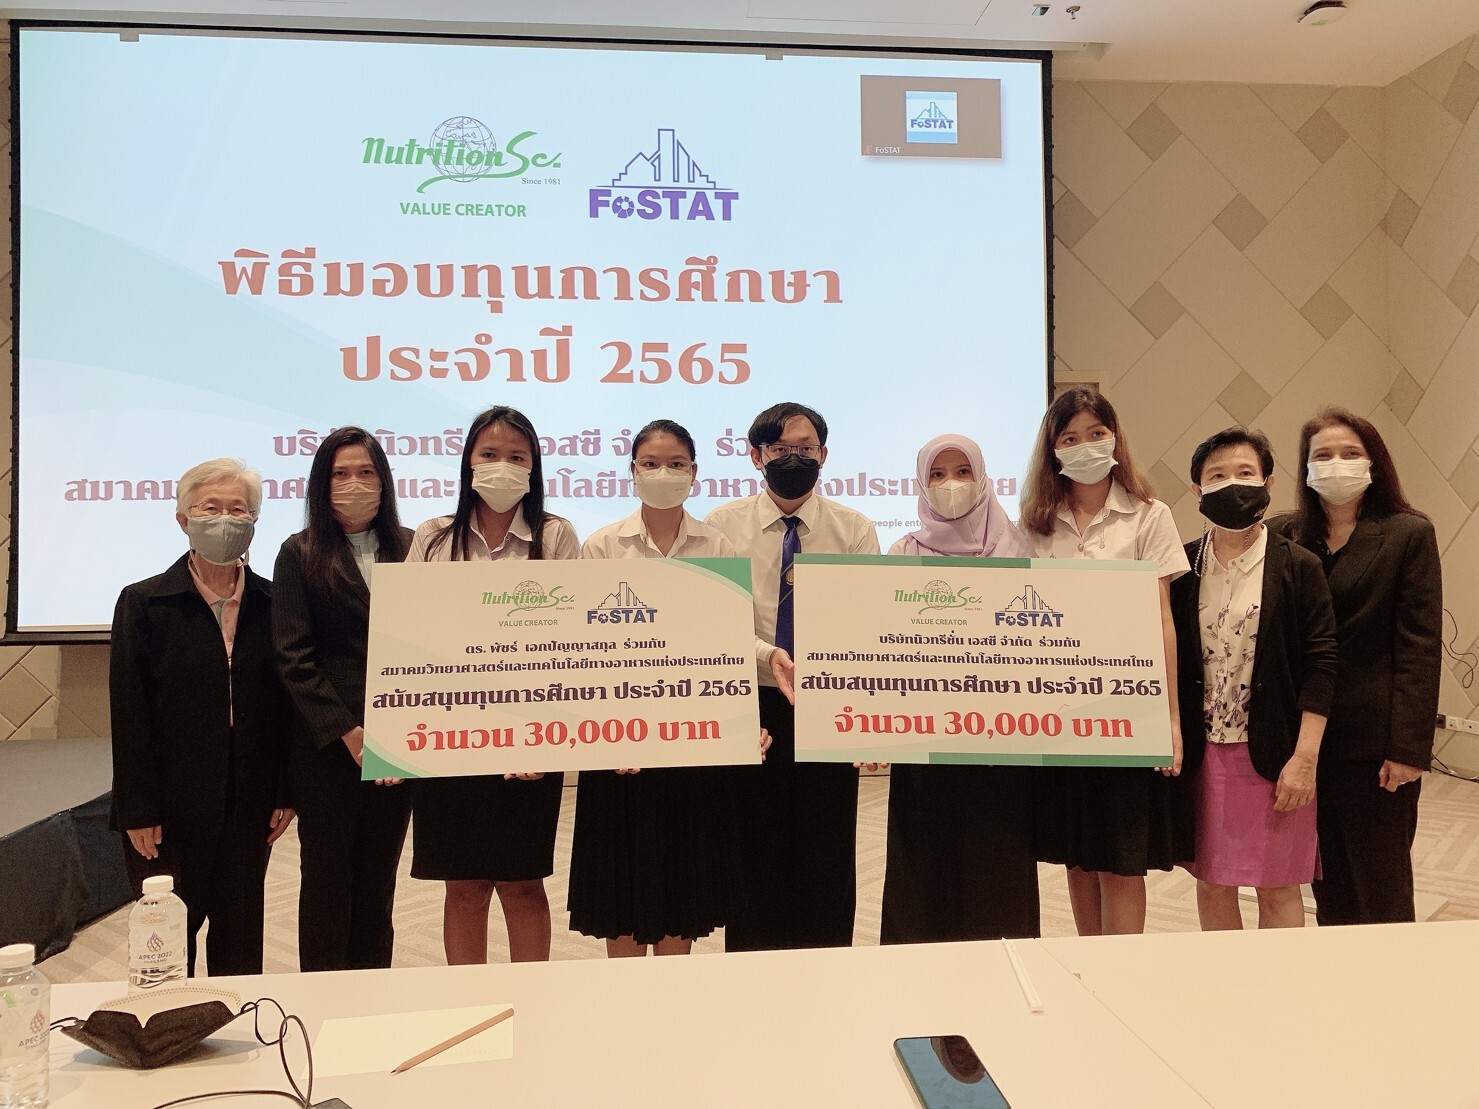 NTSC ร่วมกับสมาคมวิทยาศาสตร์และเทคโนโลยีทางอาหารแห่งประเทศไทย มอบเงินสนับสนุนทุนการศึกษาประจำปี 2565